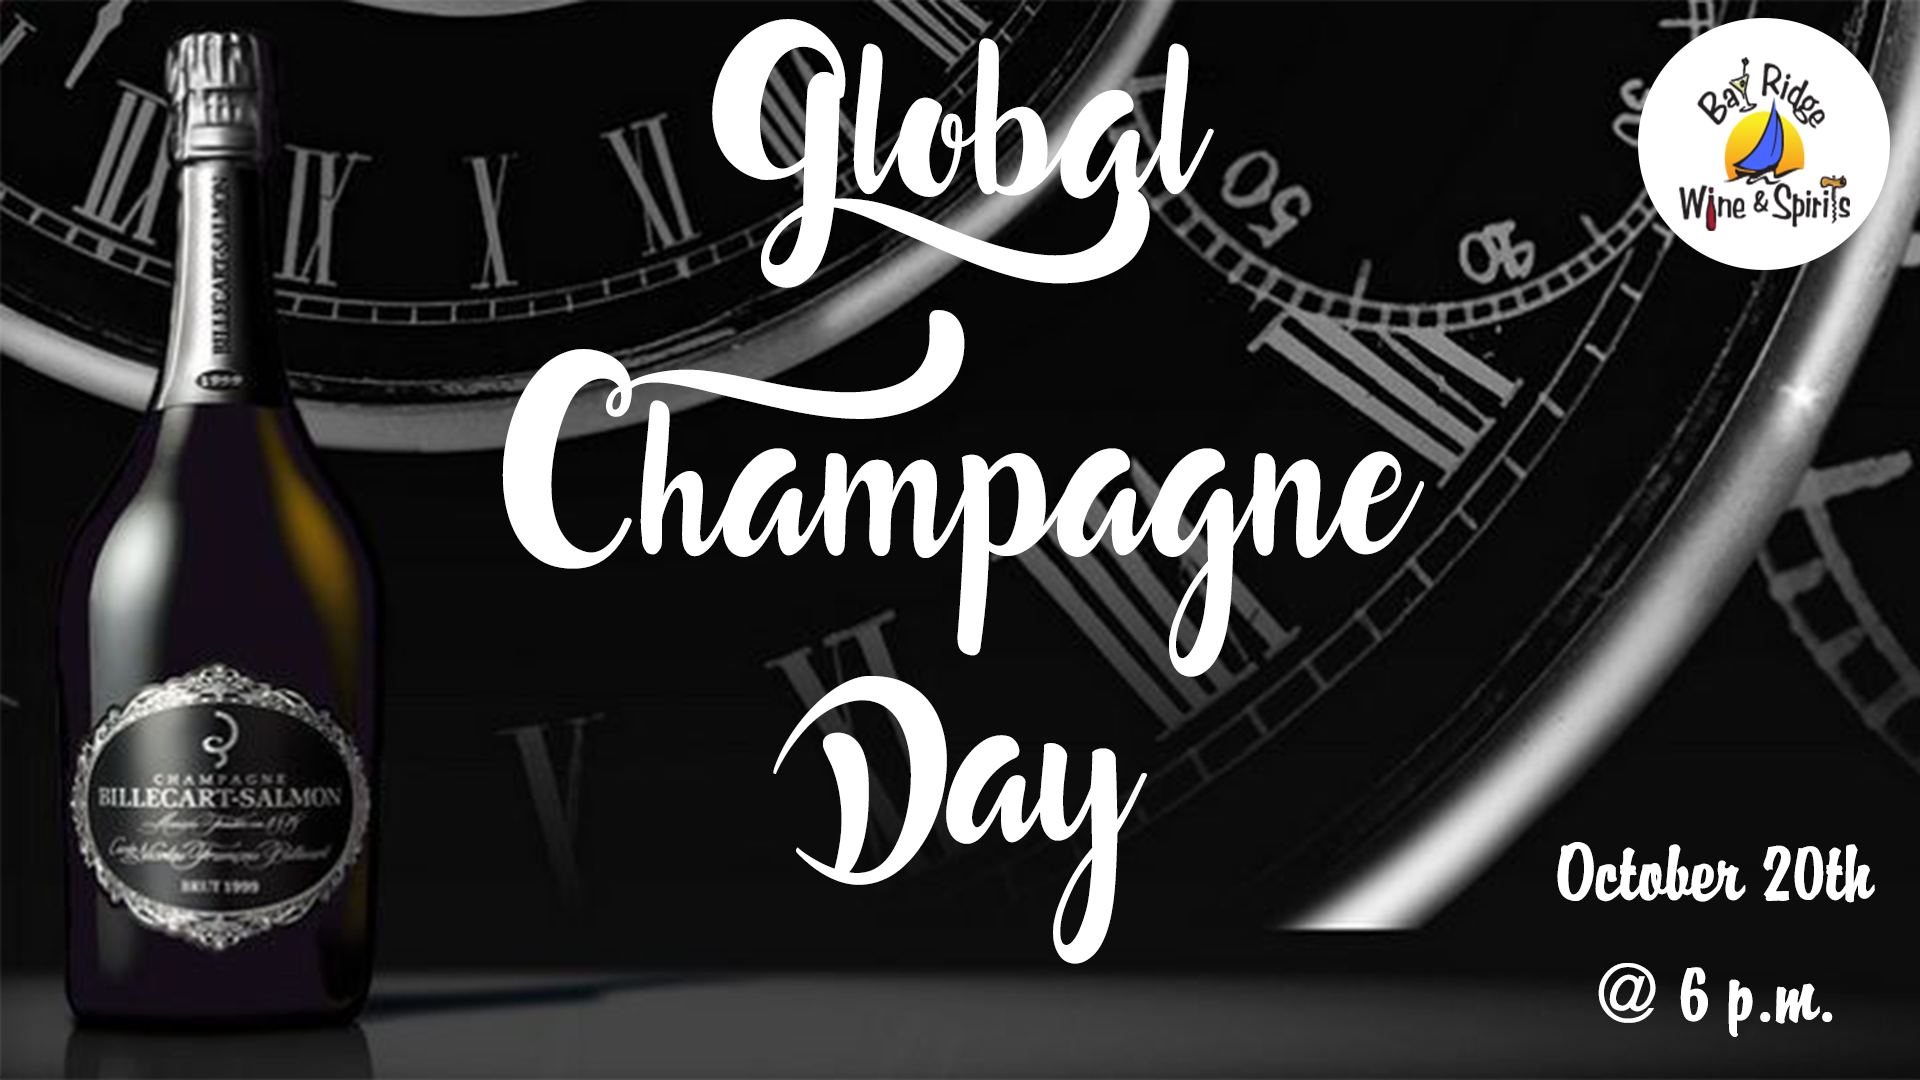 GlobalChampagneday Bay Ridge Wine & Spirits